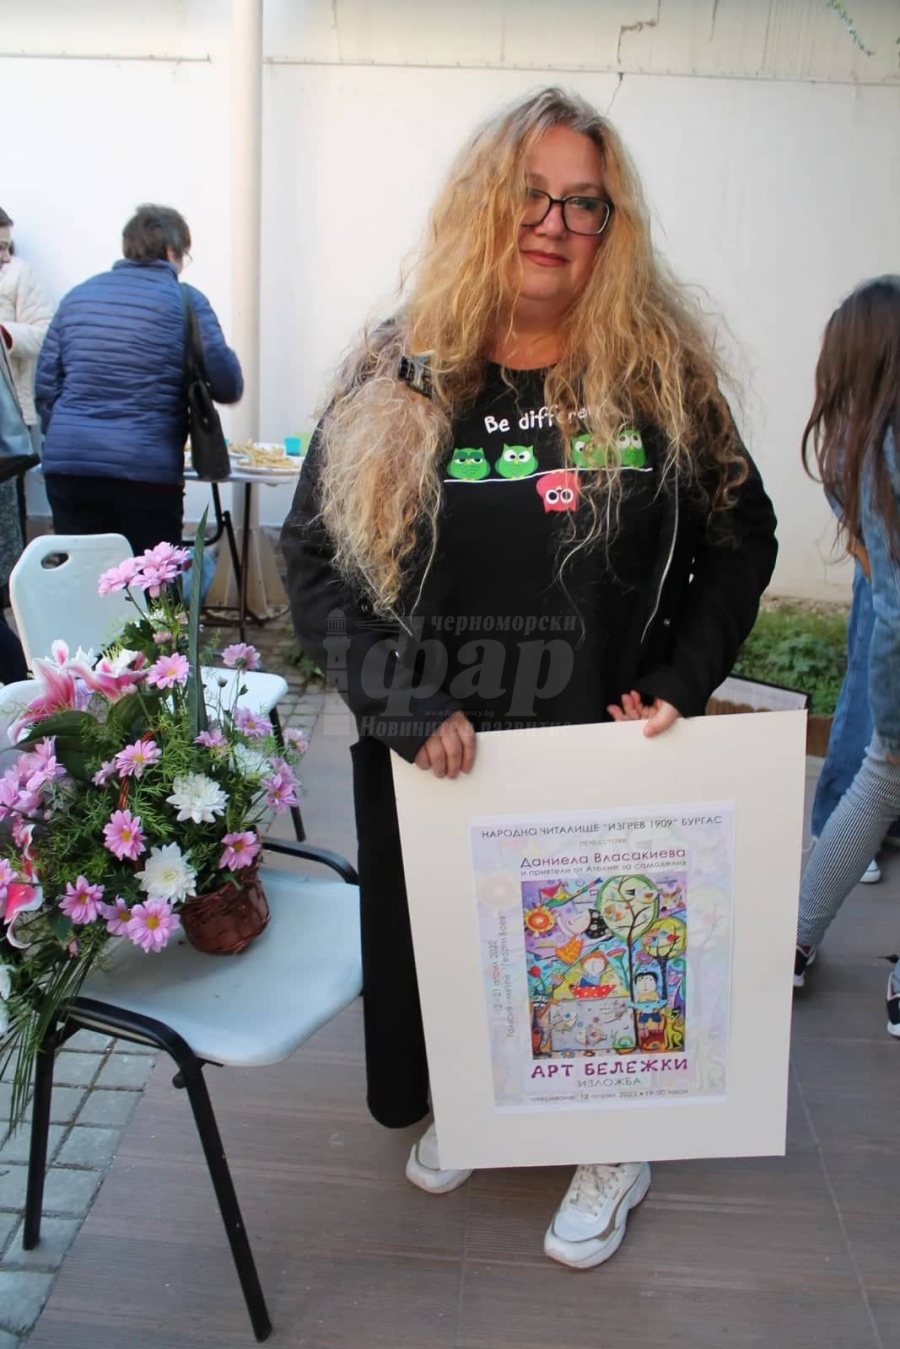 Даниела Власакиева - жената, която подари кукла на кмета Димитър Николов